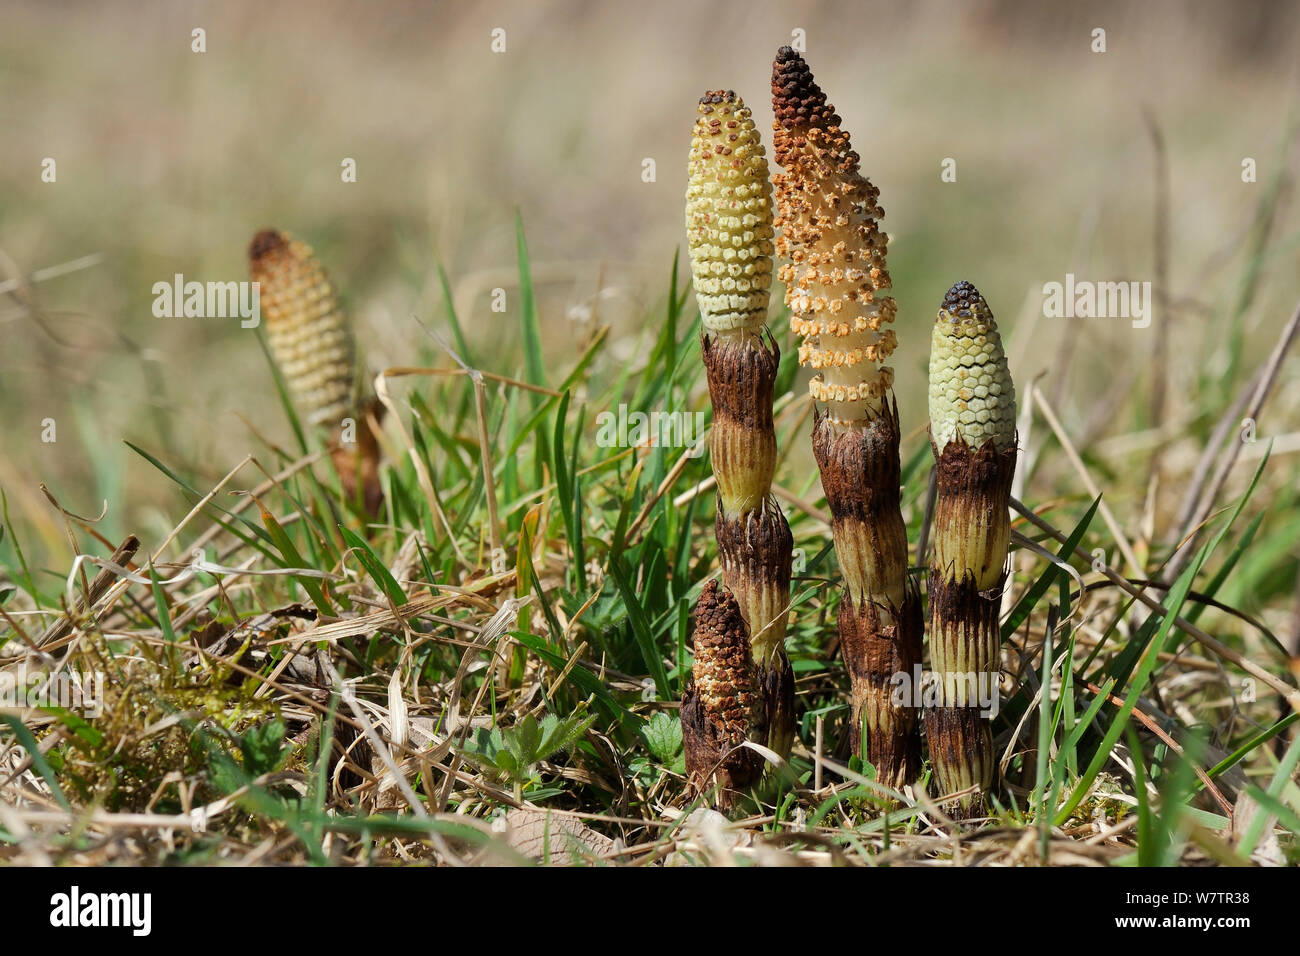 Conos de esporas de gran Equiseto o cola de caballo (Equisteum amerging telmateia) de tierra pantanosa alrededor de un estanque, Wiltshire, REINO UNIDO, Abril. Foto de stock